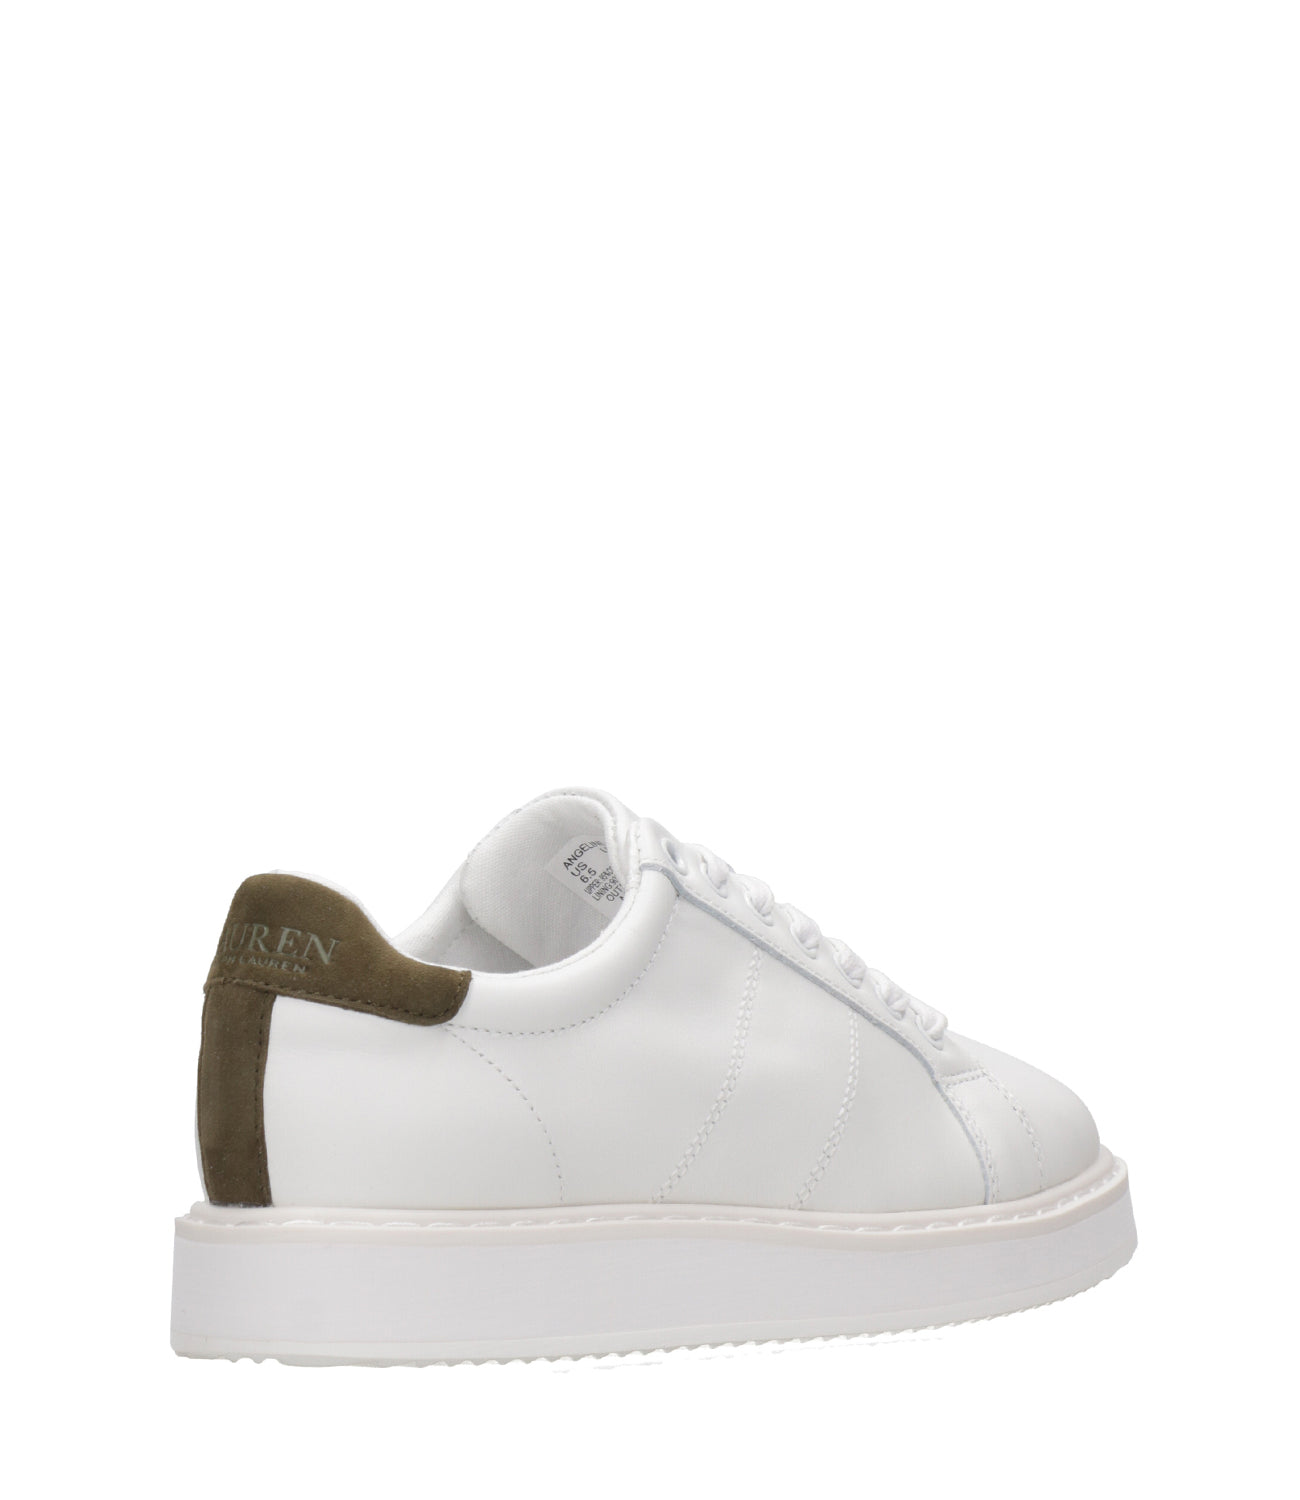 Lauren Ralph Lauren | Angeline Sneakers White and Green